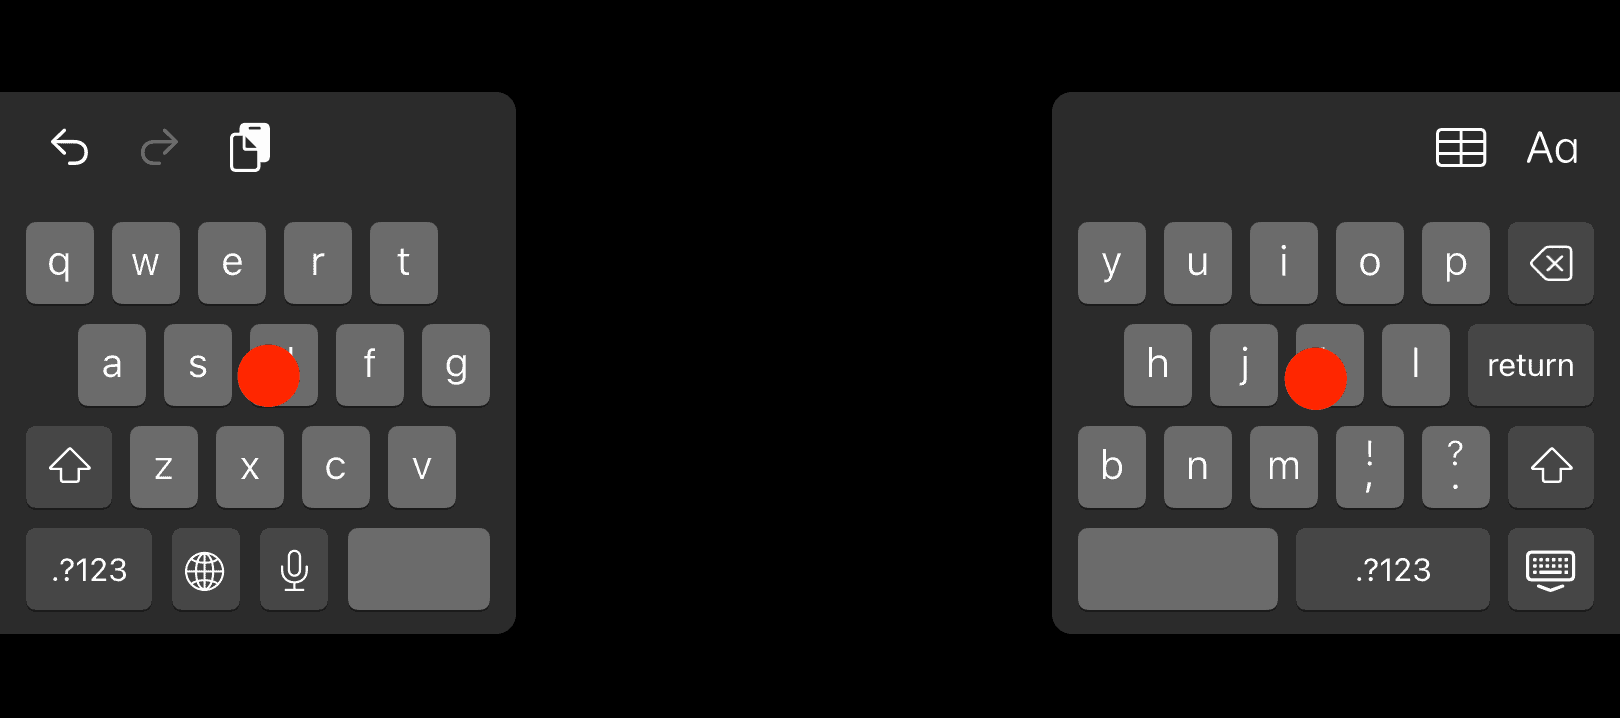 keyboard split merge how to make keyboard bigger on ipad
